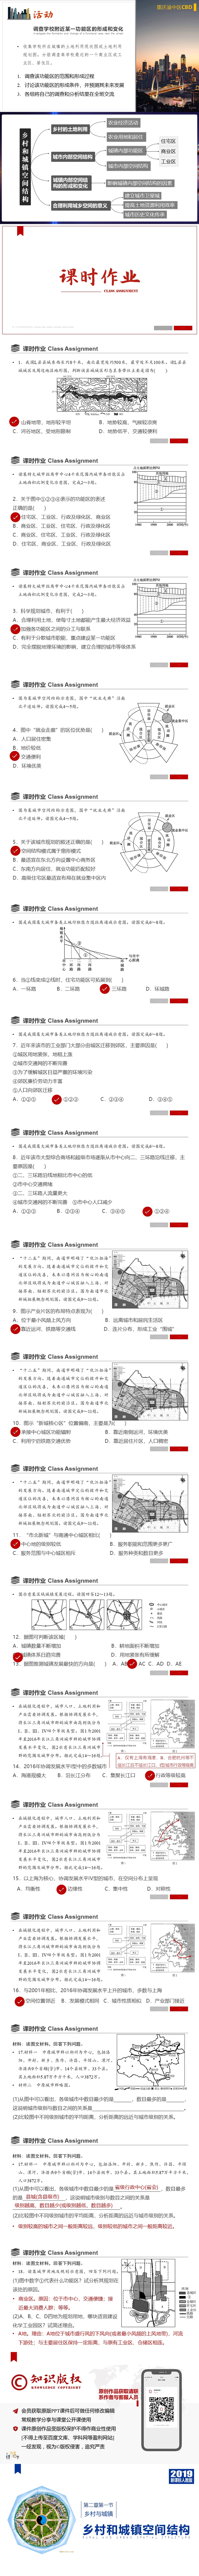 [2019版 新课标] 2.2.1 乡村和城镇空间结构-800PX-3.jpg